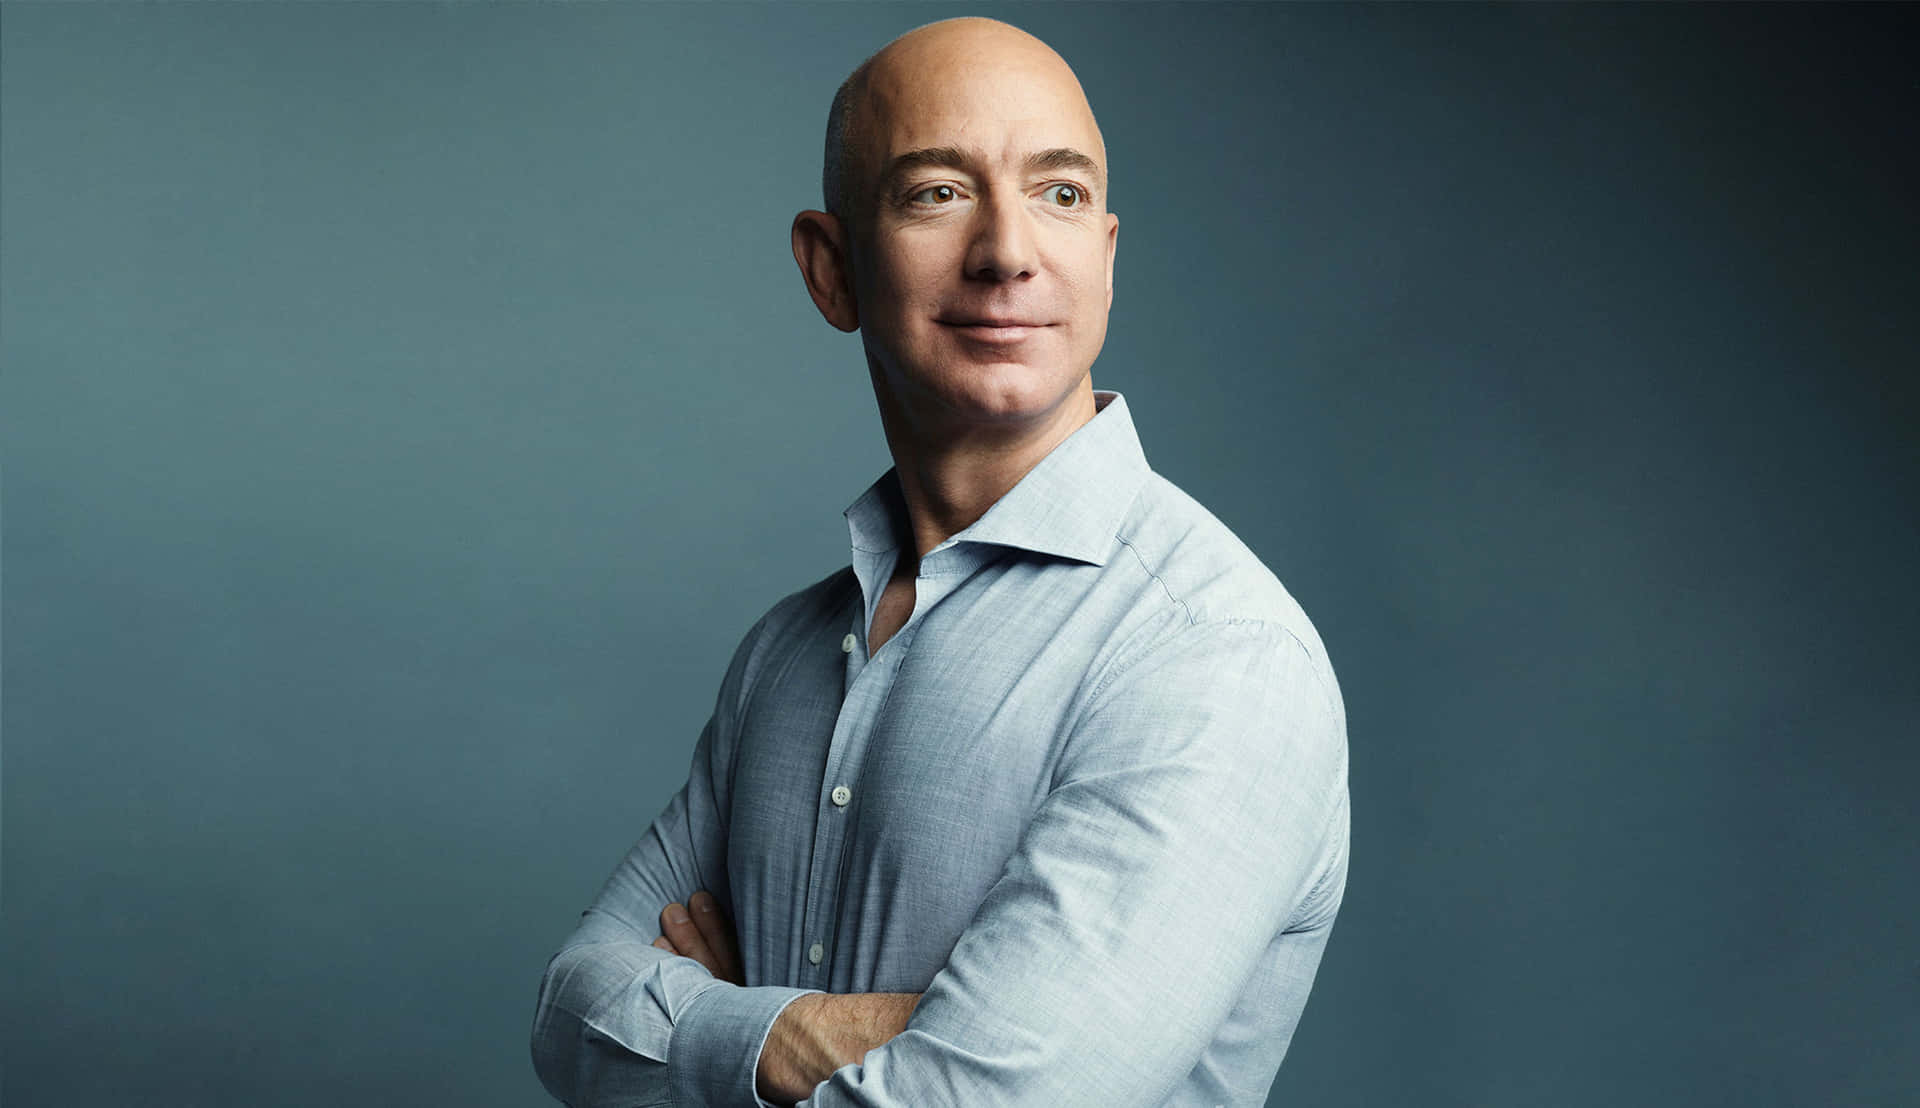 Jeff Bezos, Entrepreneur and Founder of Amazon